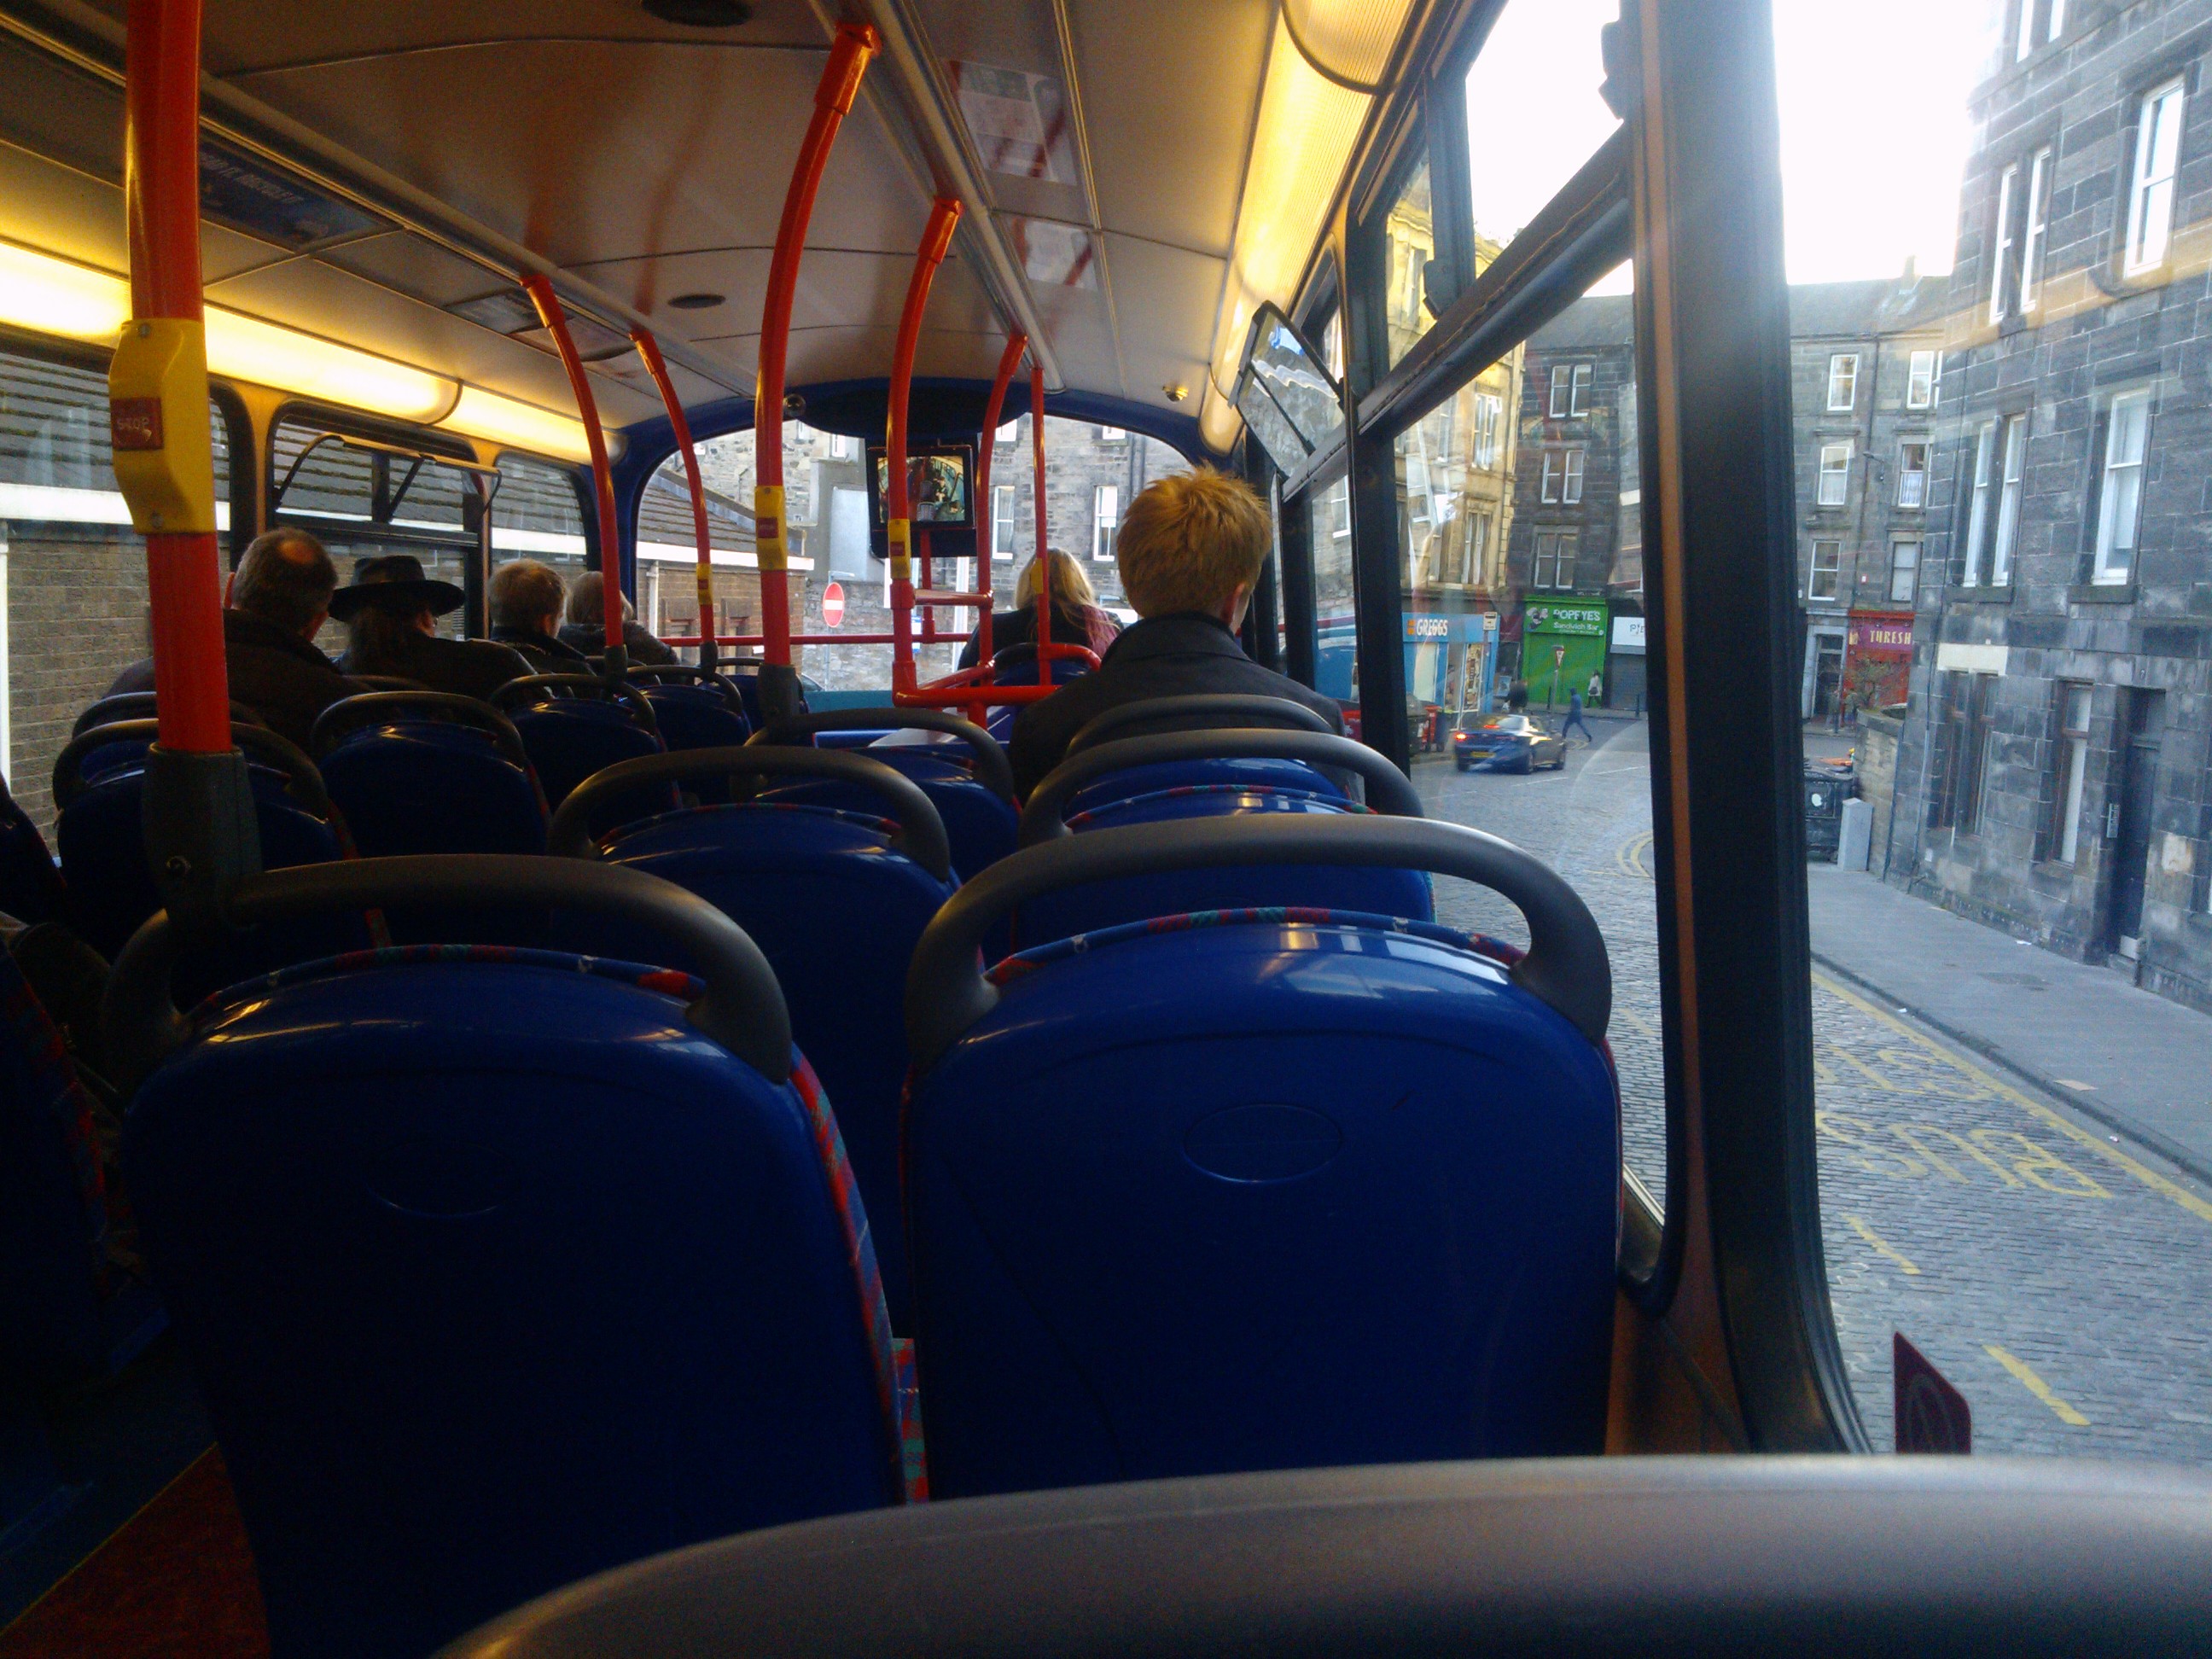 Az egyik Weasley ült előttem az emeletes buszon :)
Velük állandóan össze lehet futni, tetszőleges skót településen. Ennyi vörös és szőke hajú gyereket és felnőttet nem láttam még egy rakáson.
http://hu.wikipedia.org/wiki/Weasley_csal%C3%A1d
